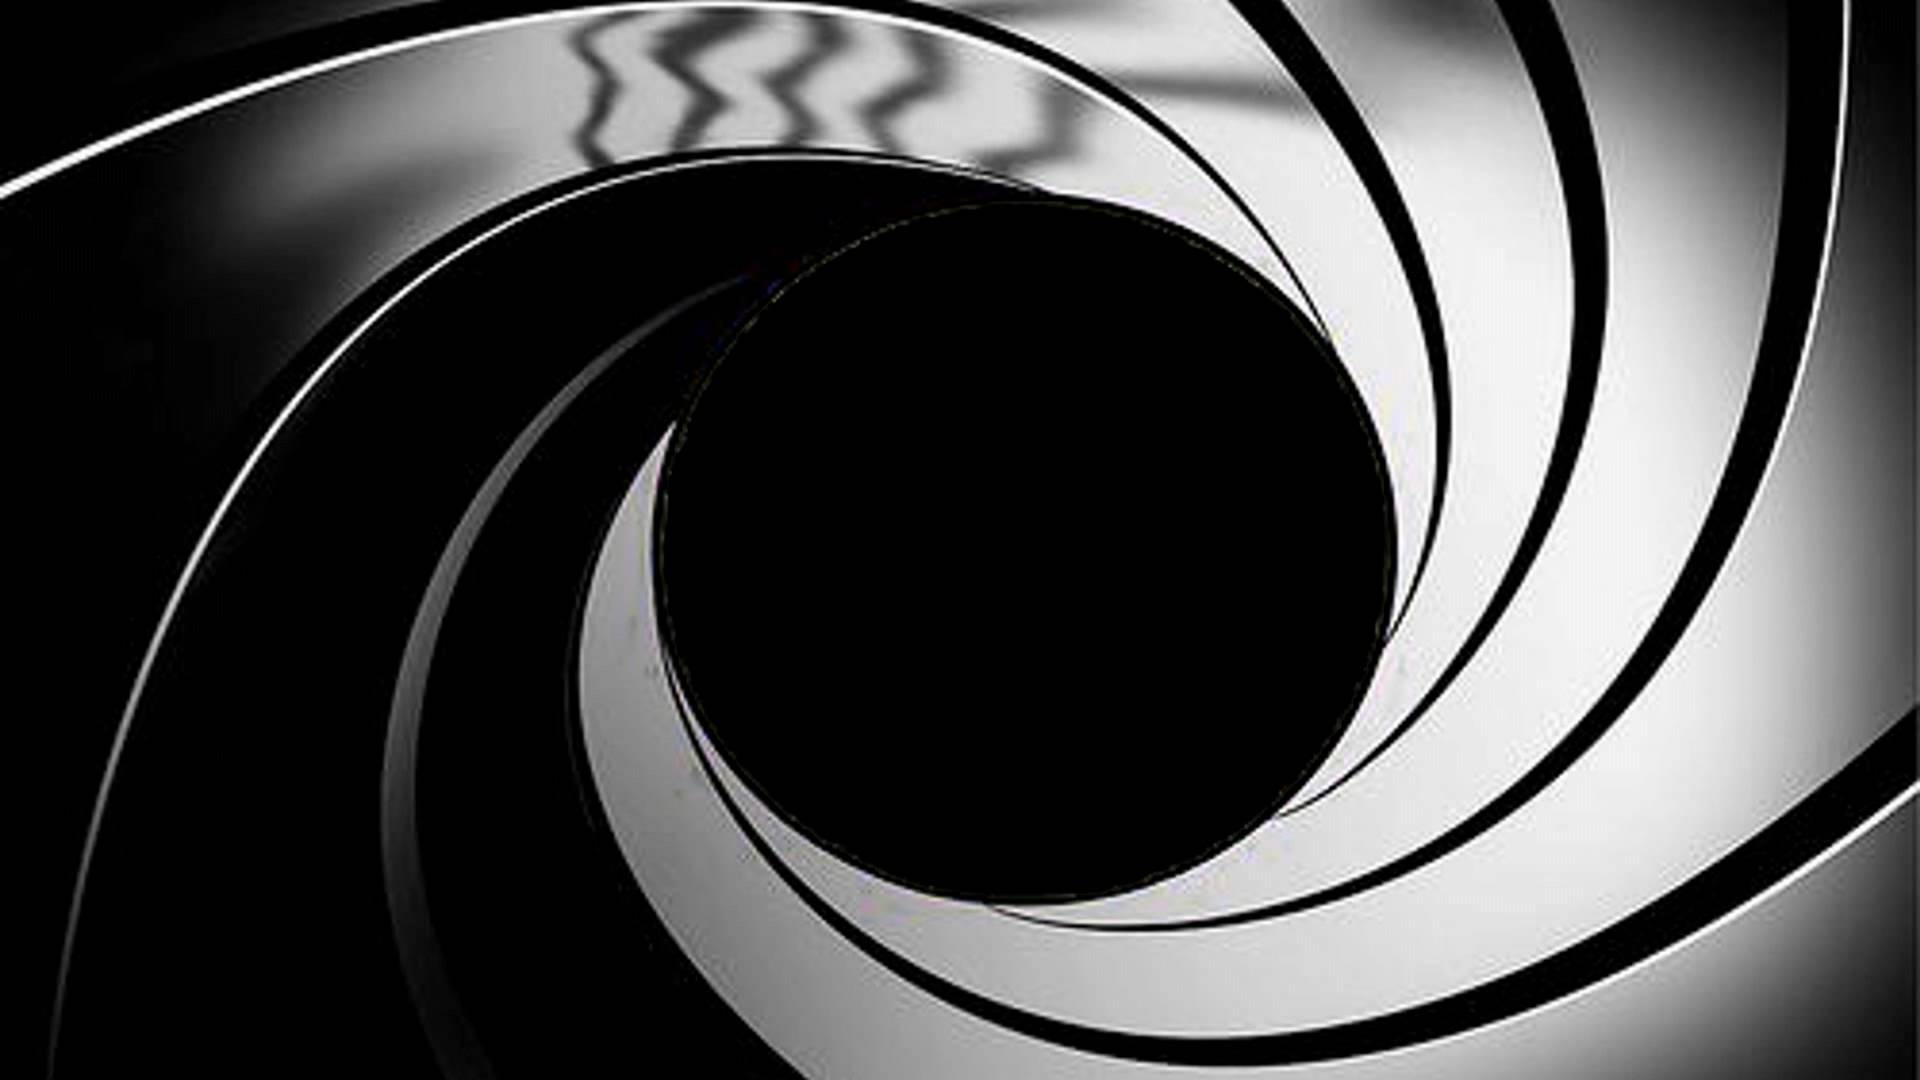 Để tôn vinh vẻ đẹp của James Bond, hãy sở hữu hình nền James Bond Gun Barrel đầy phóng khoáng trên điện thoại hoặc máy tính của bạn. Mỗi lần bấm mở màn hình, bạn sẽ cảm thấy như đang chiêm ngưỡng tập phim đầy kịch tính của